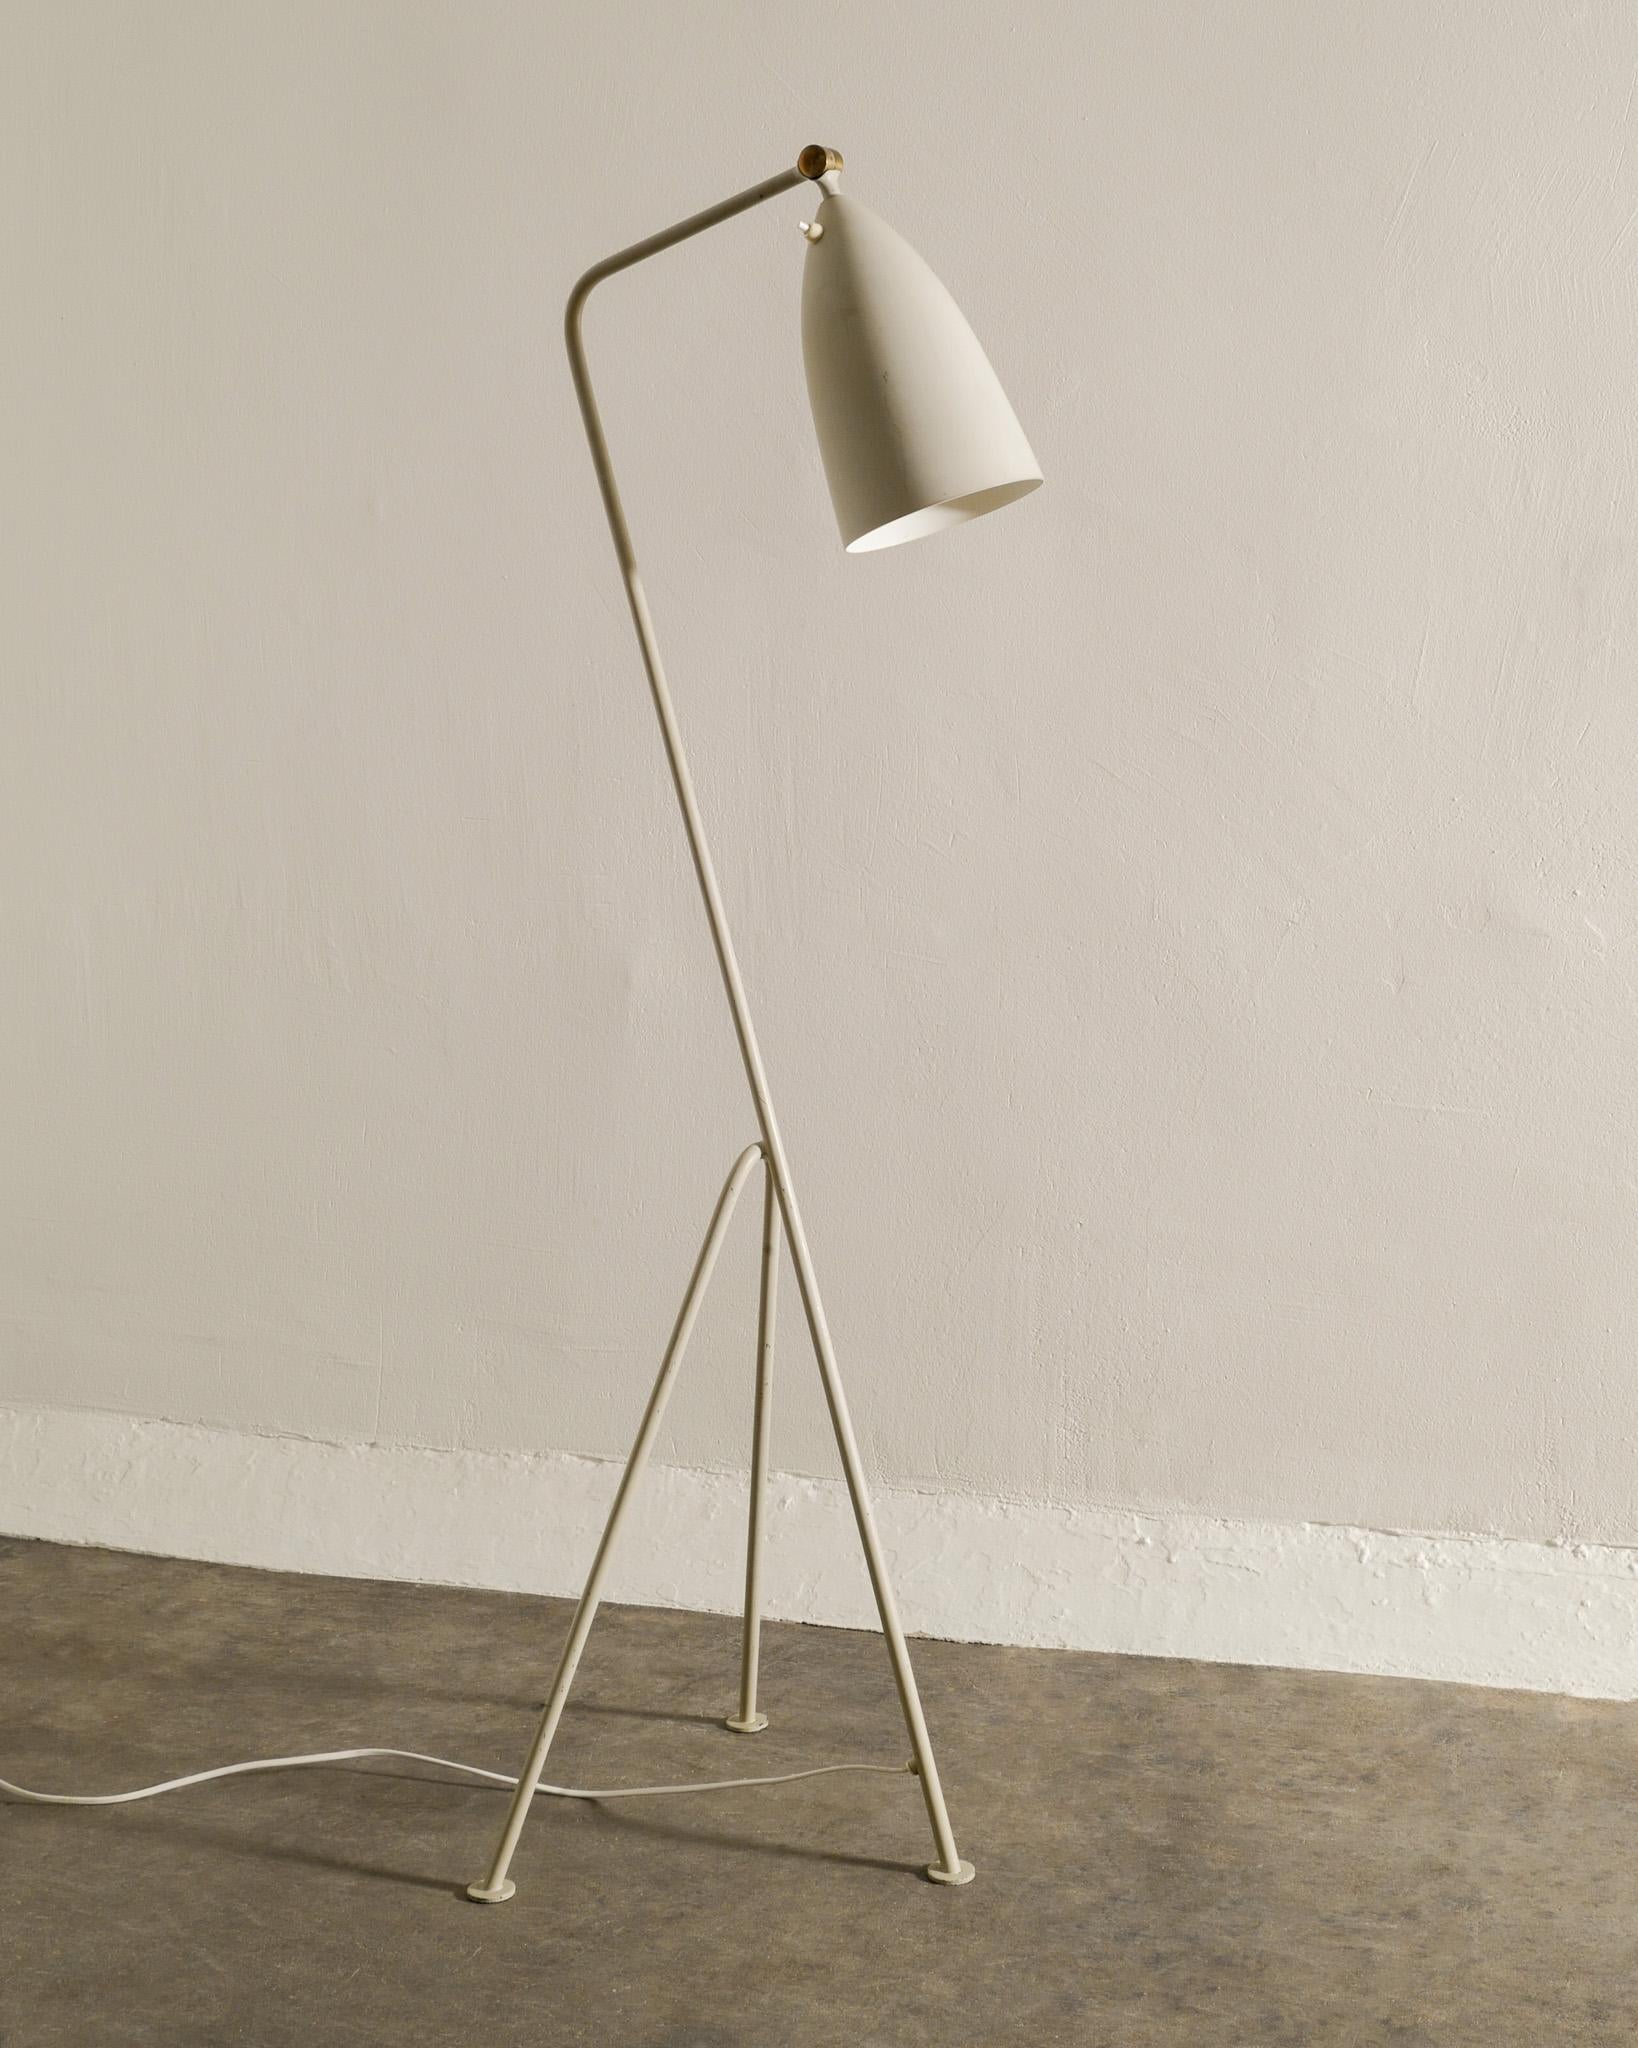 Scandinave moderne Greta Magnusson-Grossman Lampe grise 